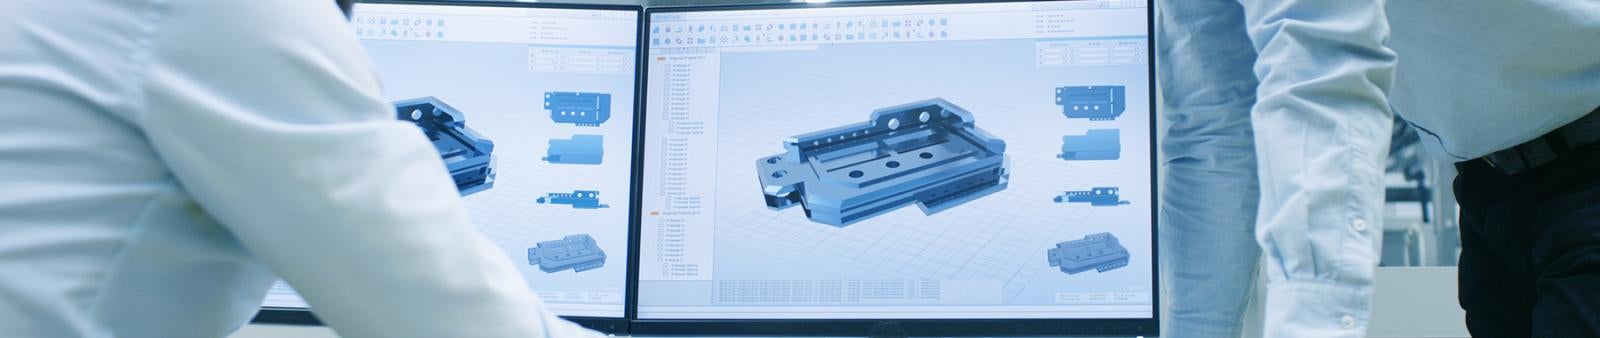 Drafting CAD Technology STEM Emphasis Banner Image